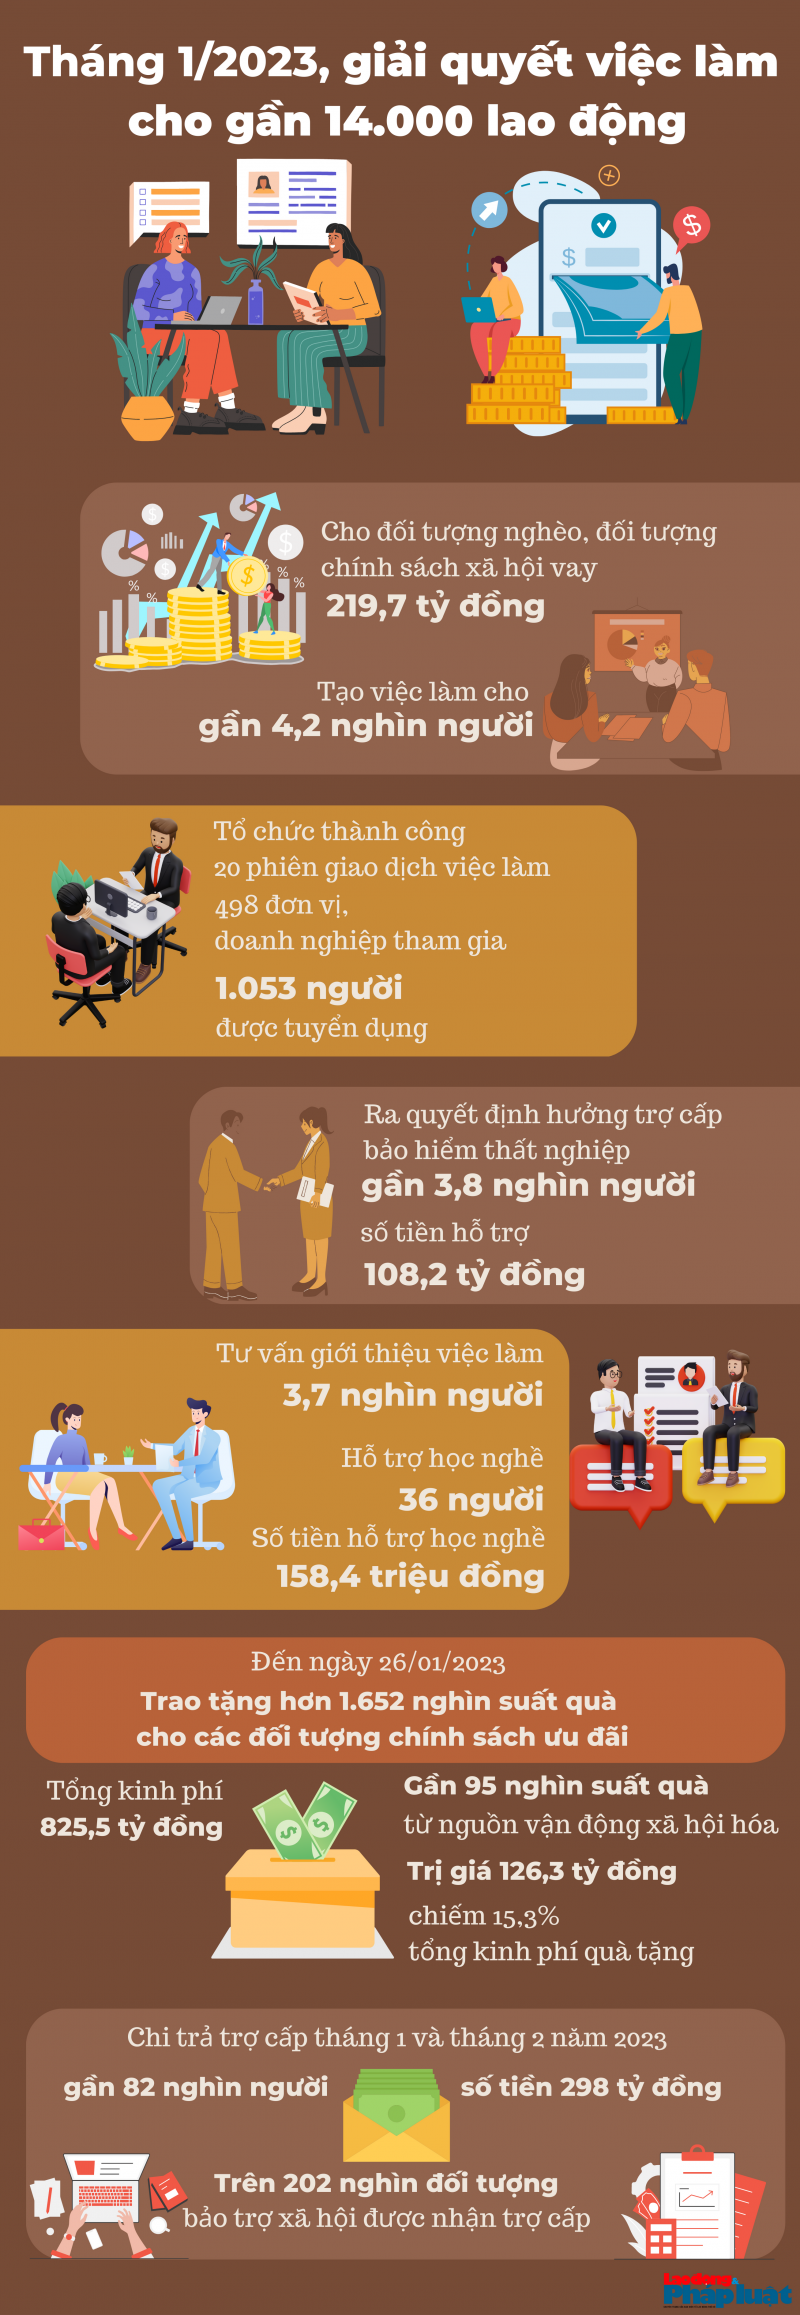 Hà Nội: Tháng 1/2023, giải quyết việc làm cho gần 14.000 lao động